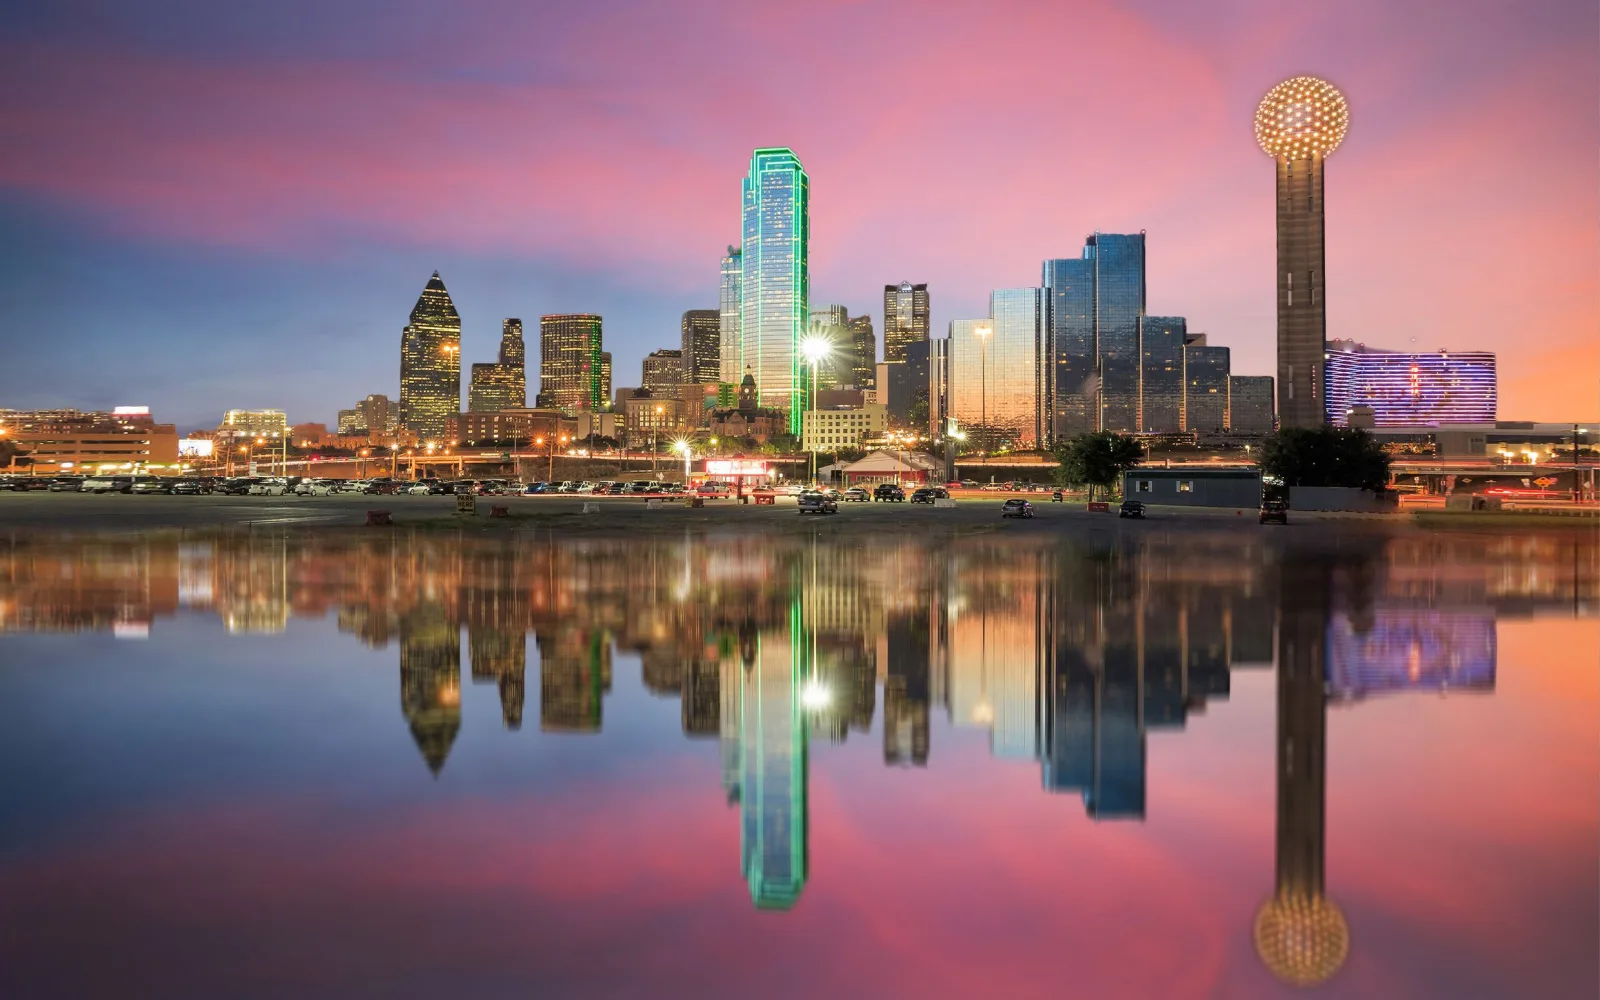 Texas Dallas Home Address